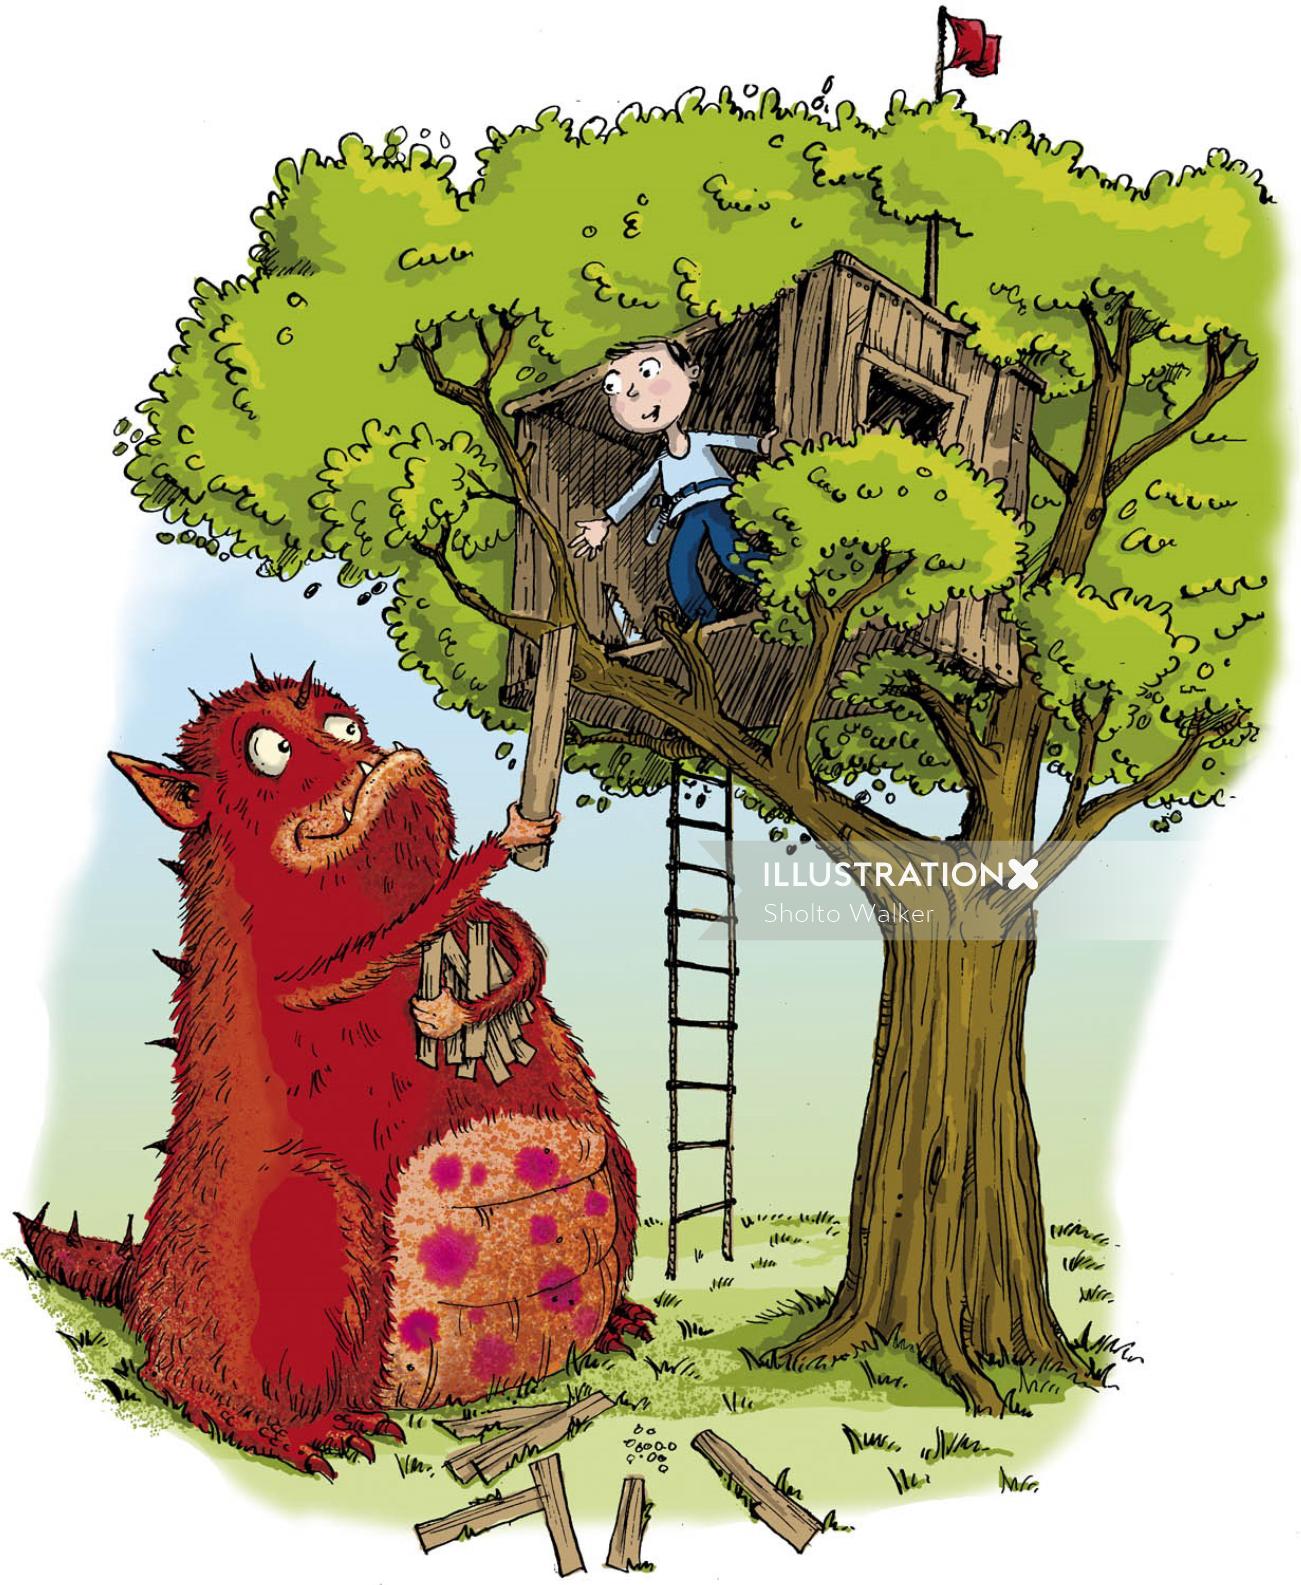 Garçon et monstre construisant une cabane dans les arbres - Illustration de dessin animé par Sholto Walker